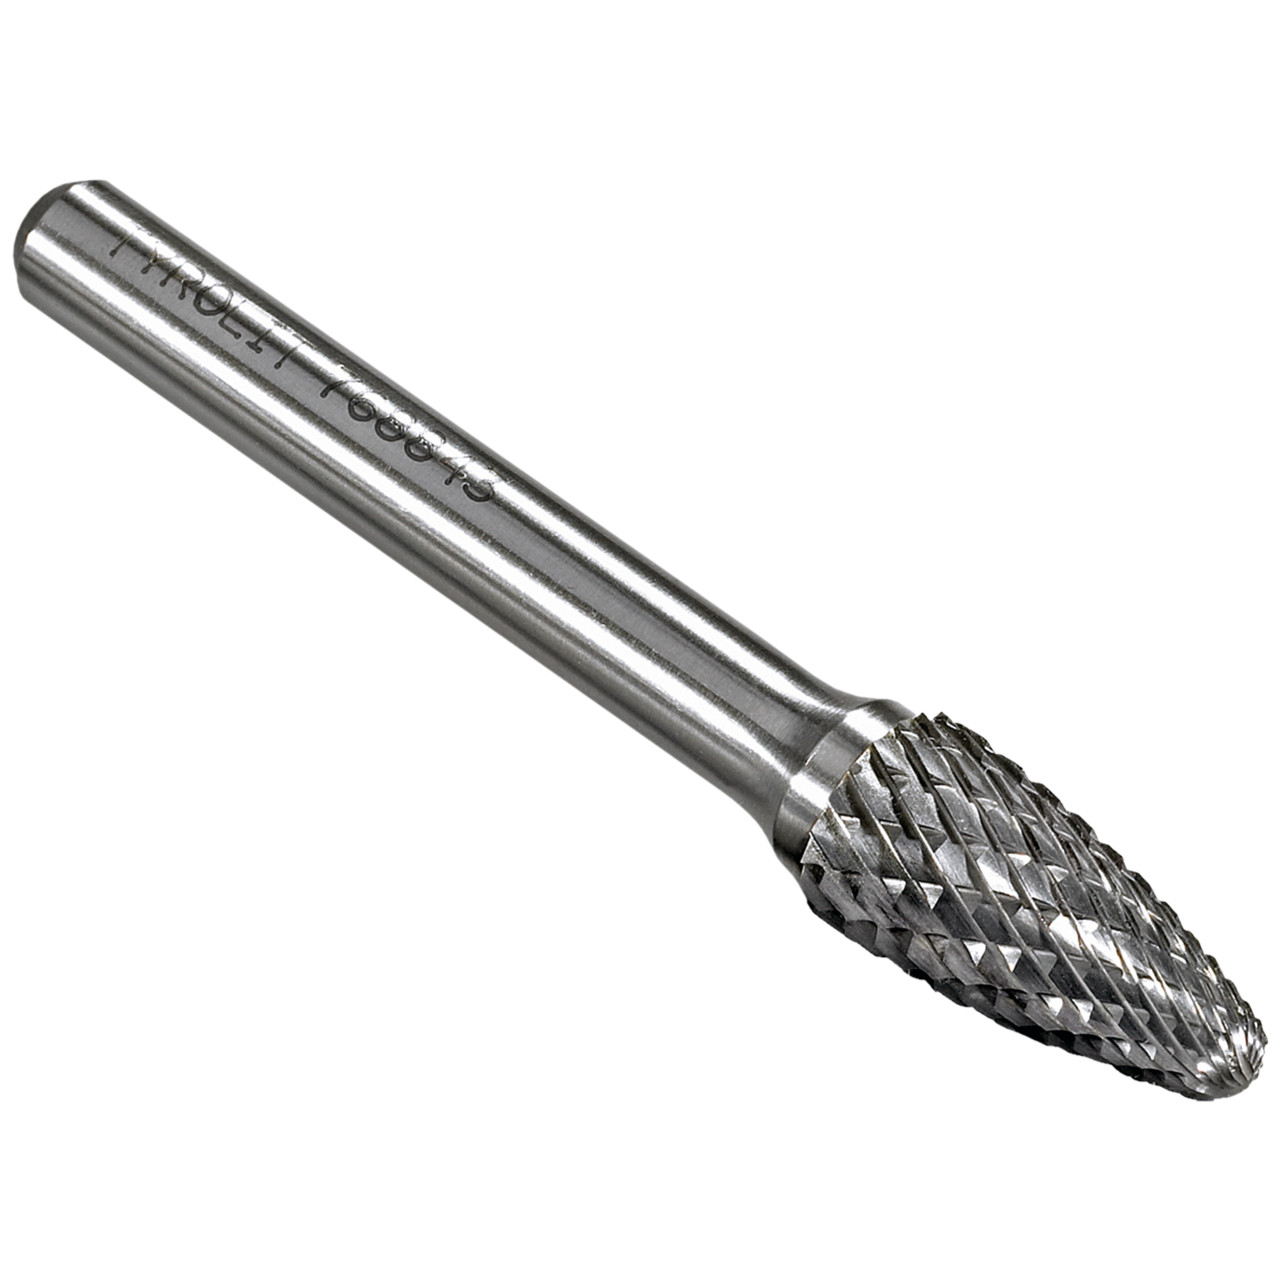 Tyrolit Hardmetalen frees DxT-SxL 8x22-6x67 Voor gietijzer, staal en roestvrij staal, vorm: 52RBF - boom, Art. 902700